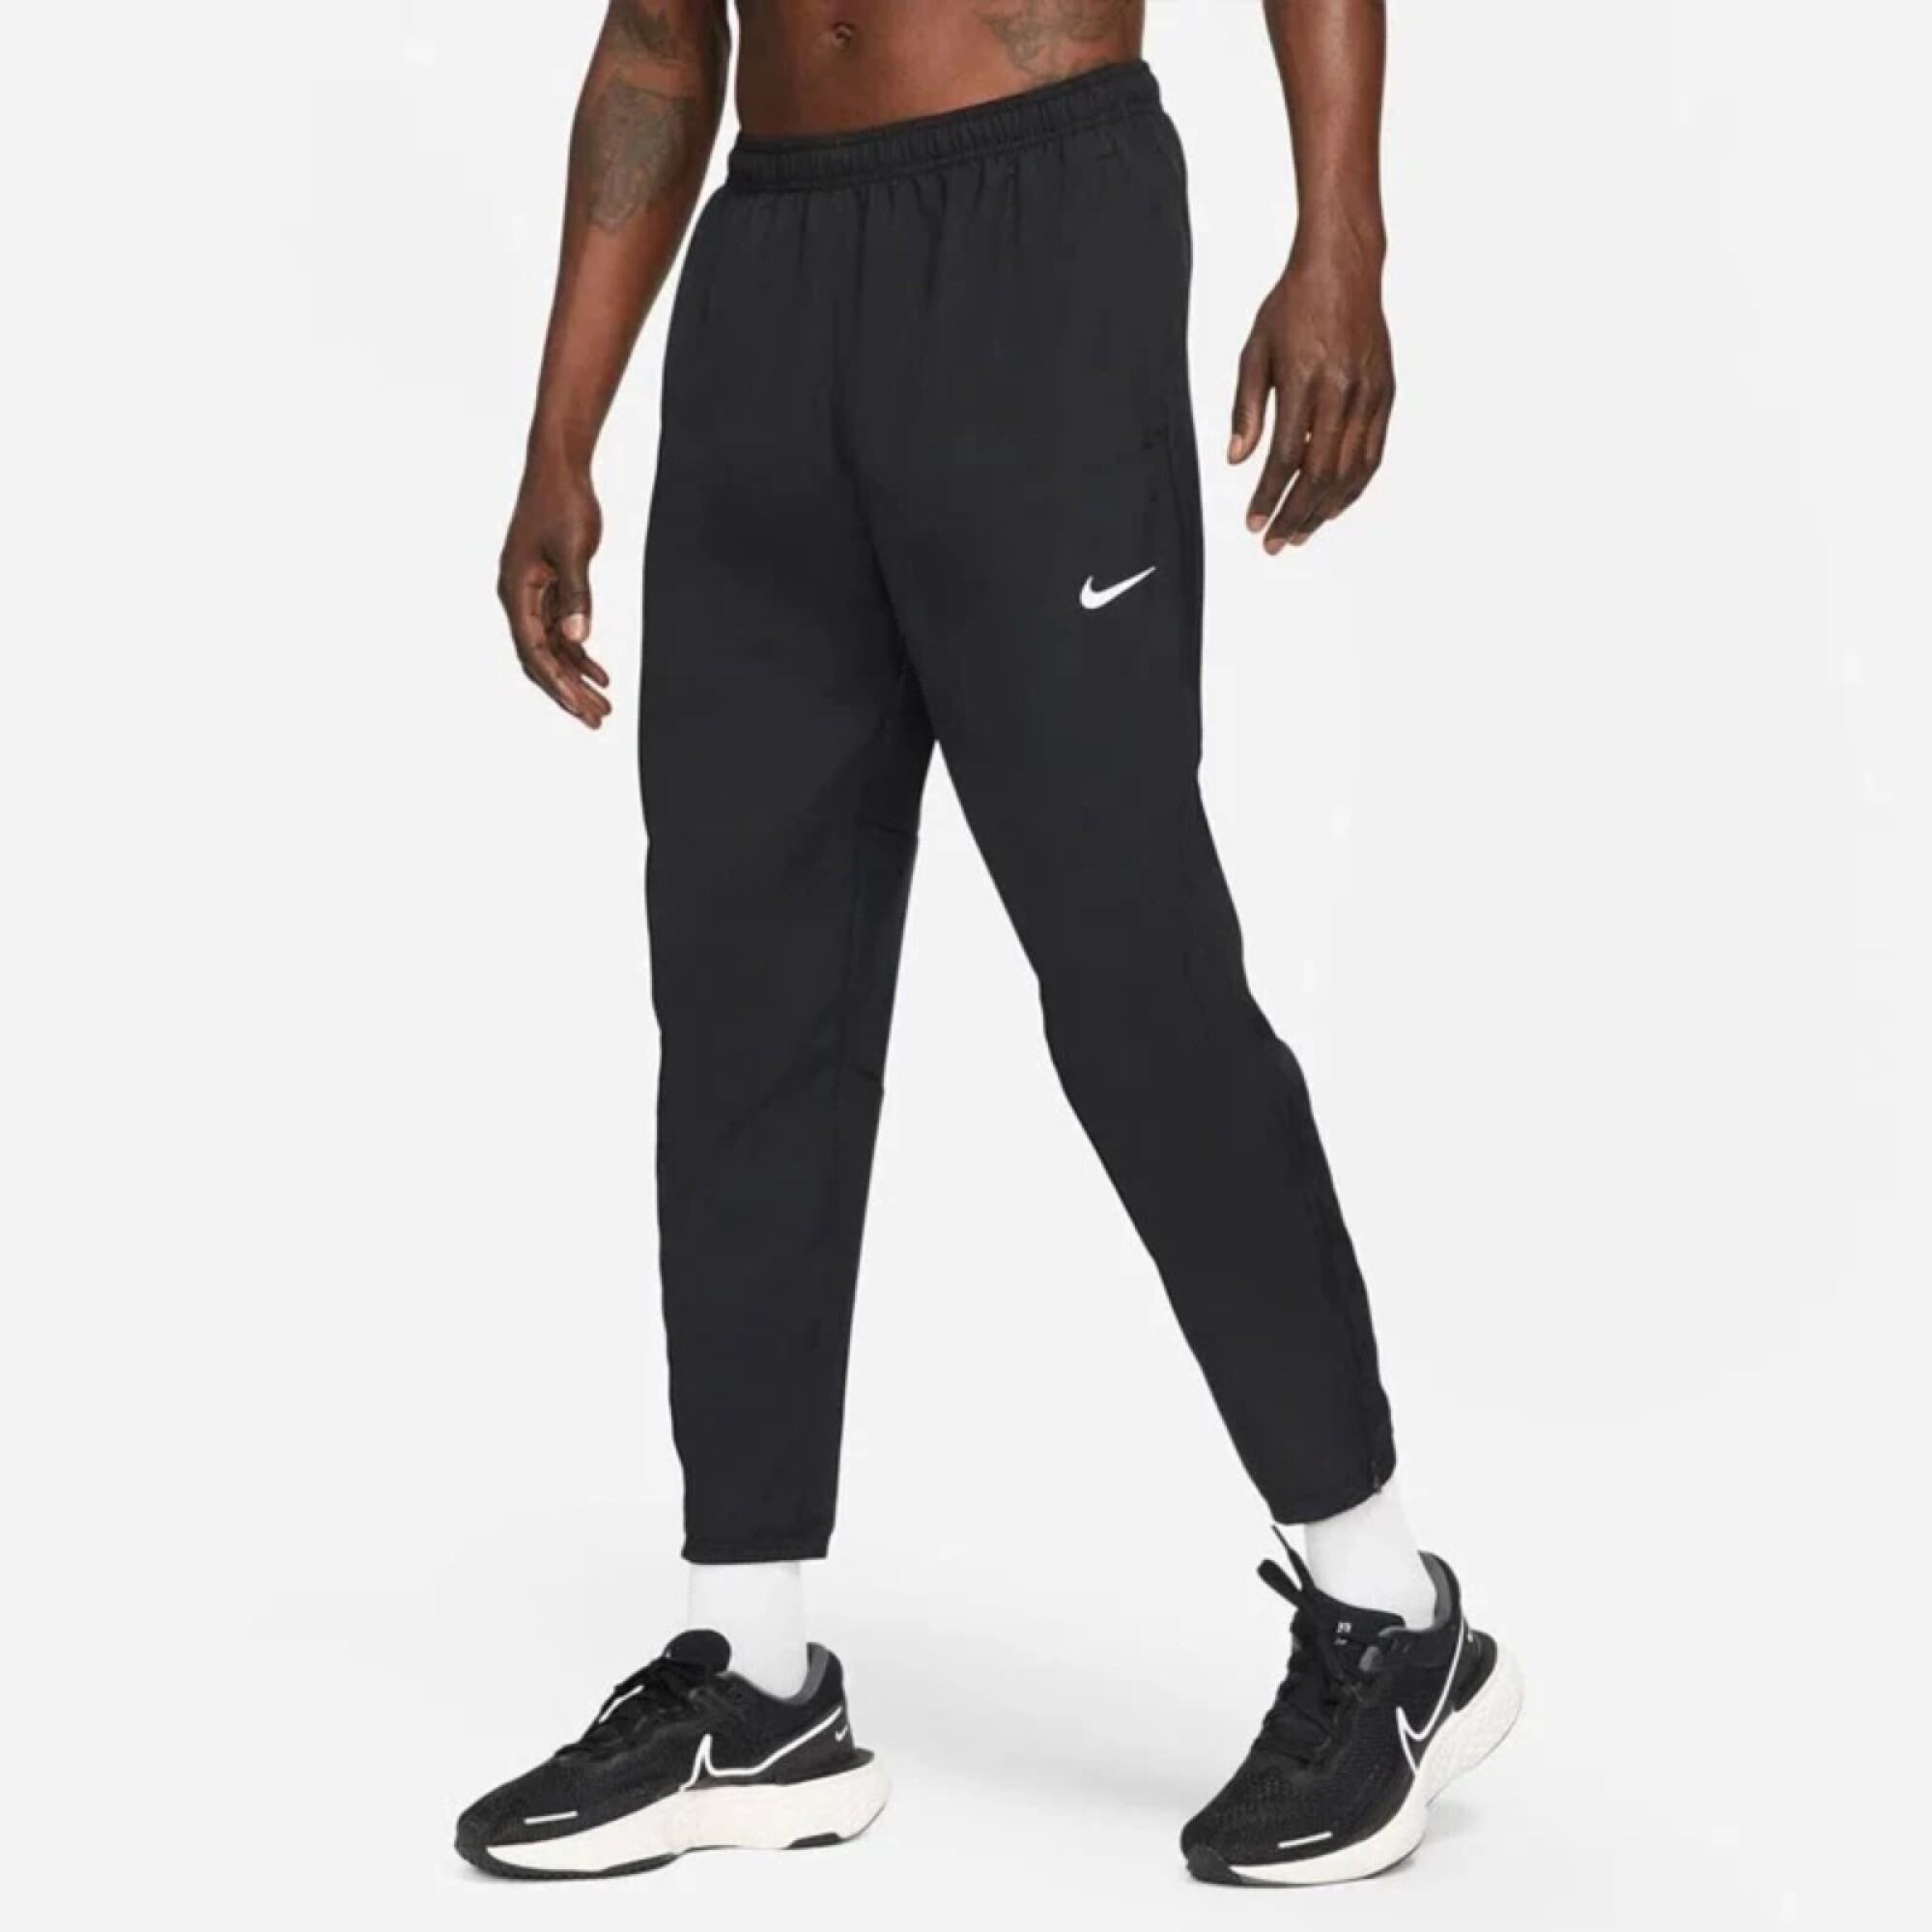 Pantalon Nike Running Hombre Df Chllgr Knit Pant Black/ - S/C — Menpi